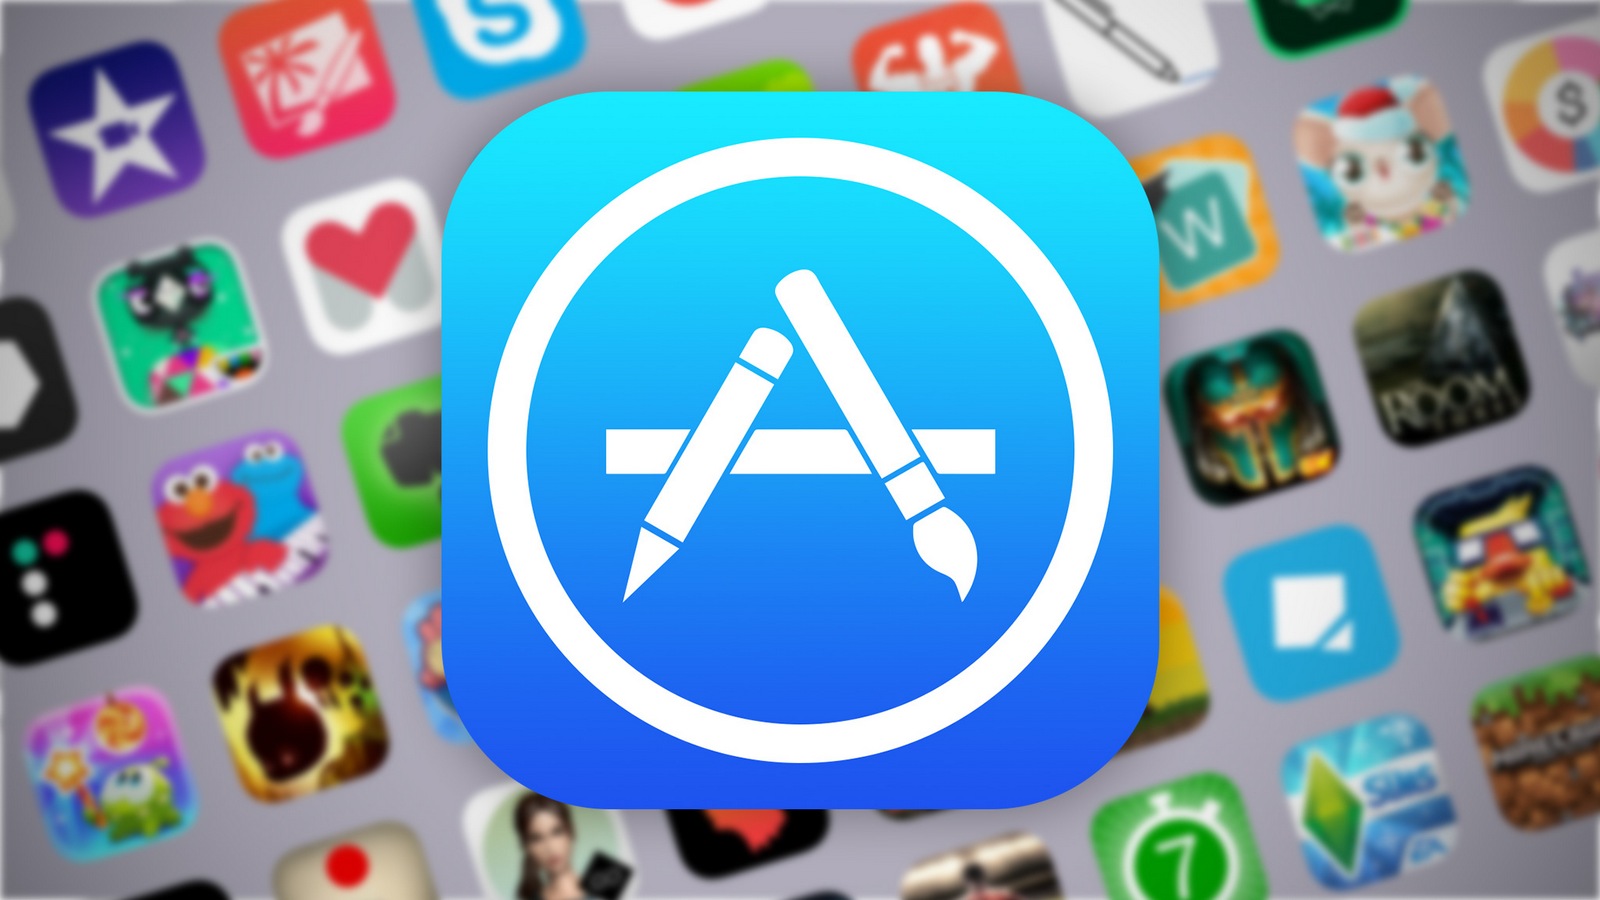 С апреля все приложения в App Store должны быть адаптированы под вырез экрана iPhone X